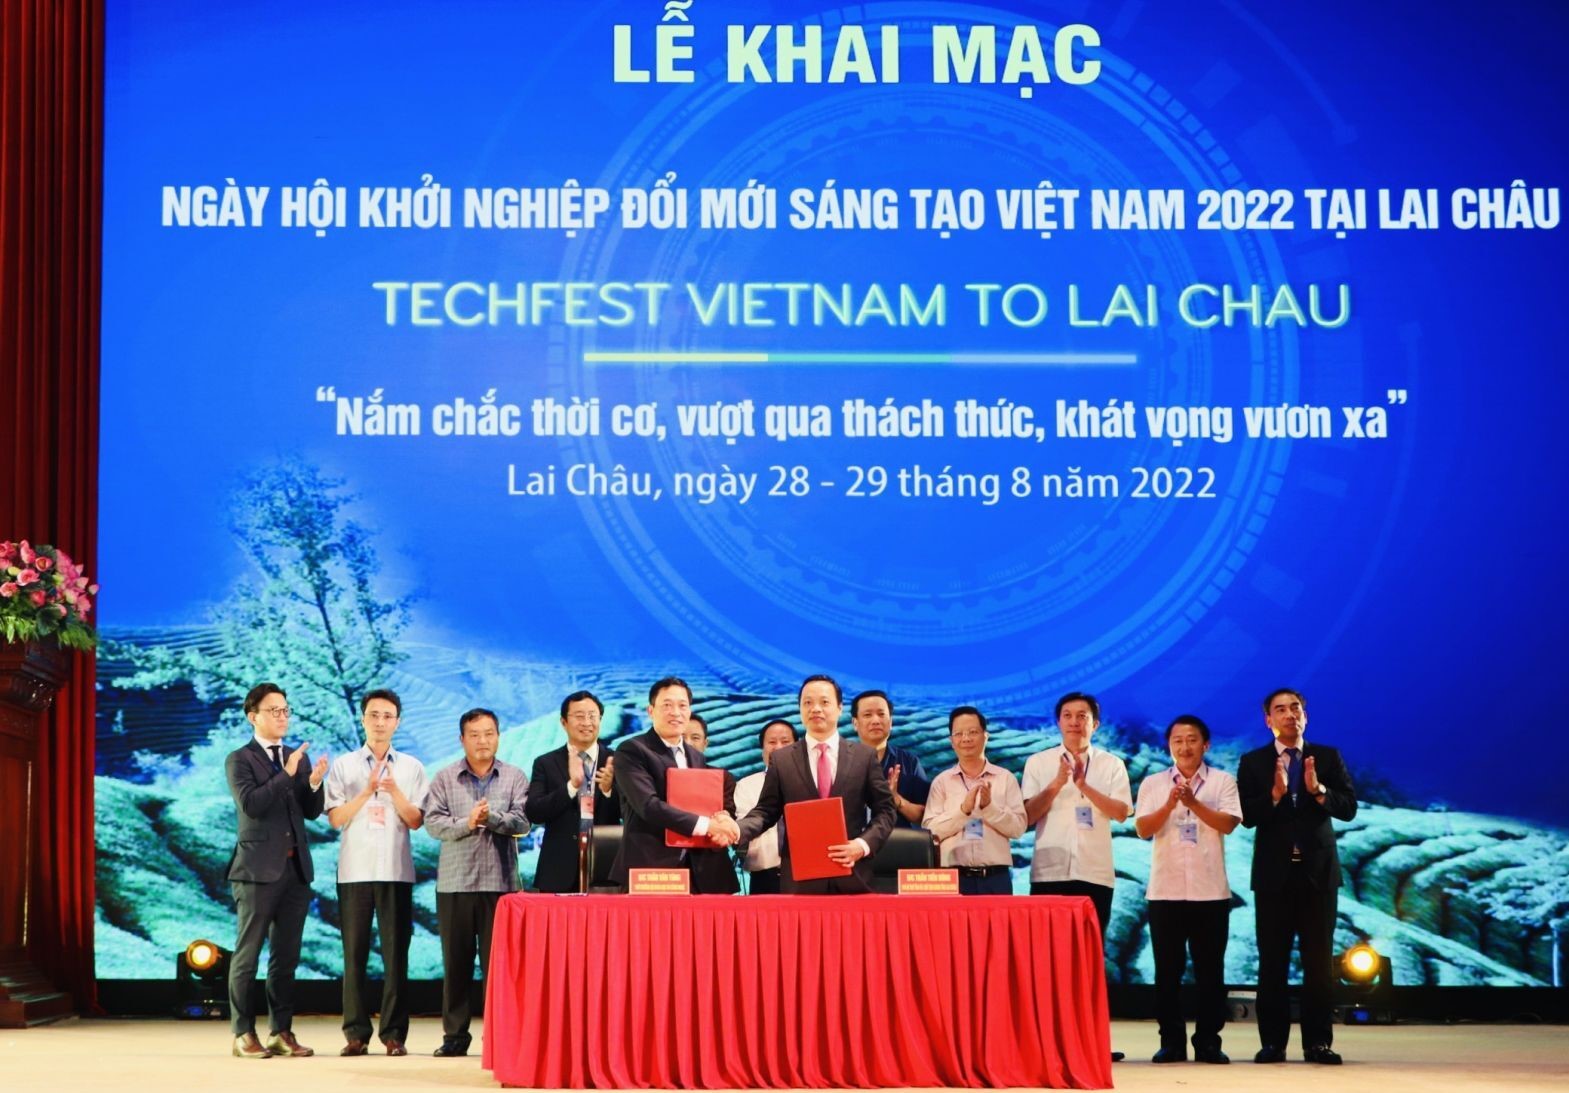 Bộ Khoa học và Công nghệ và tỉnh Lai Châu đã ký kết Biên bản ghi nhớ tiến tới phối hợp hoạt động khoa học, công nghệ và đổi mới sáng tạo giữa Bộ Khoa học và Công nghệ và tỉnh Lai Châu giai đoạn 2022 - 2025